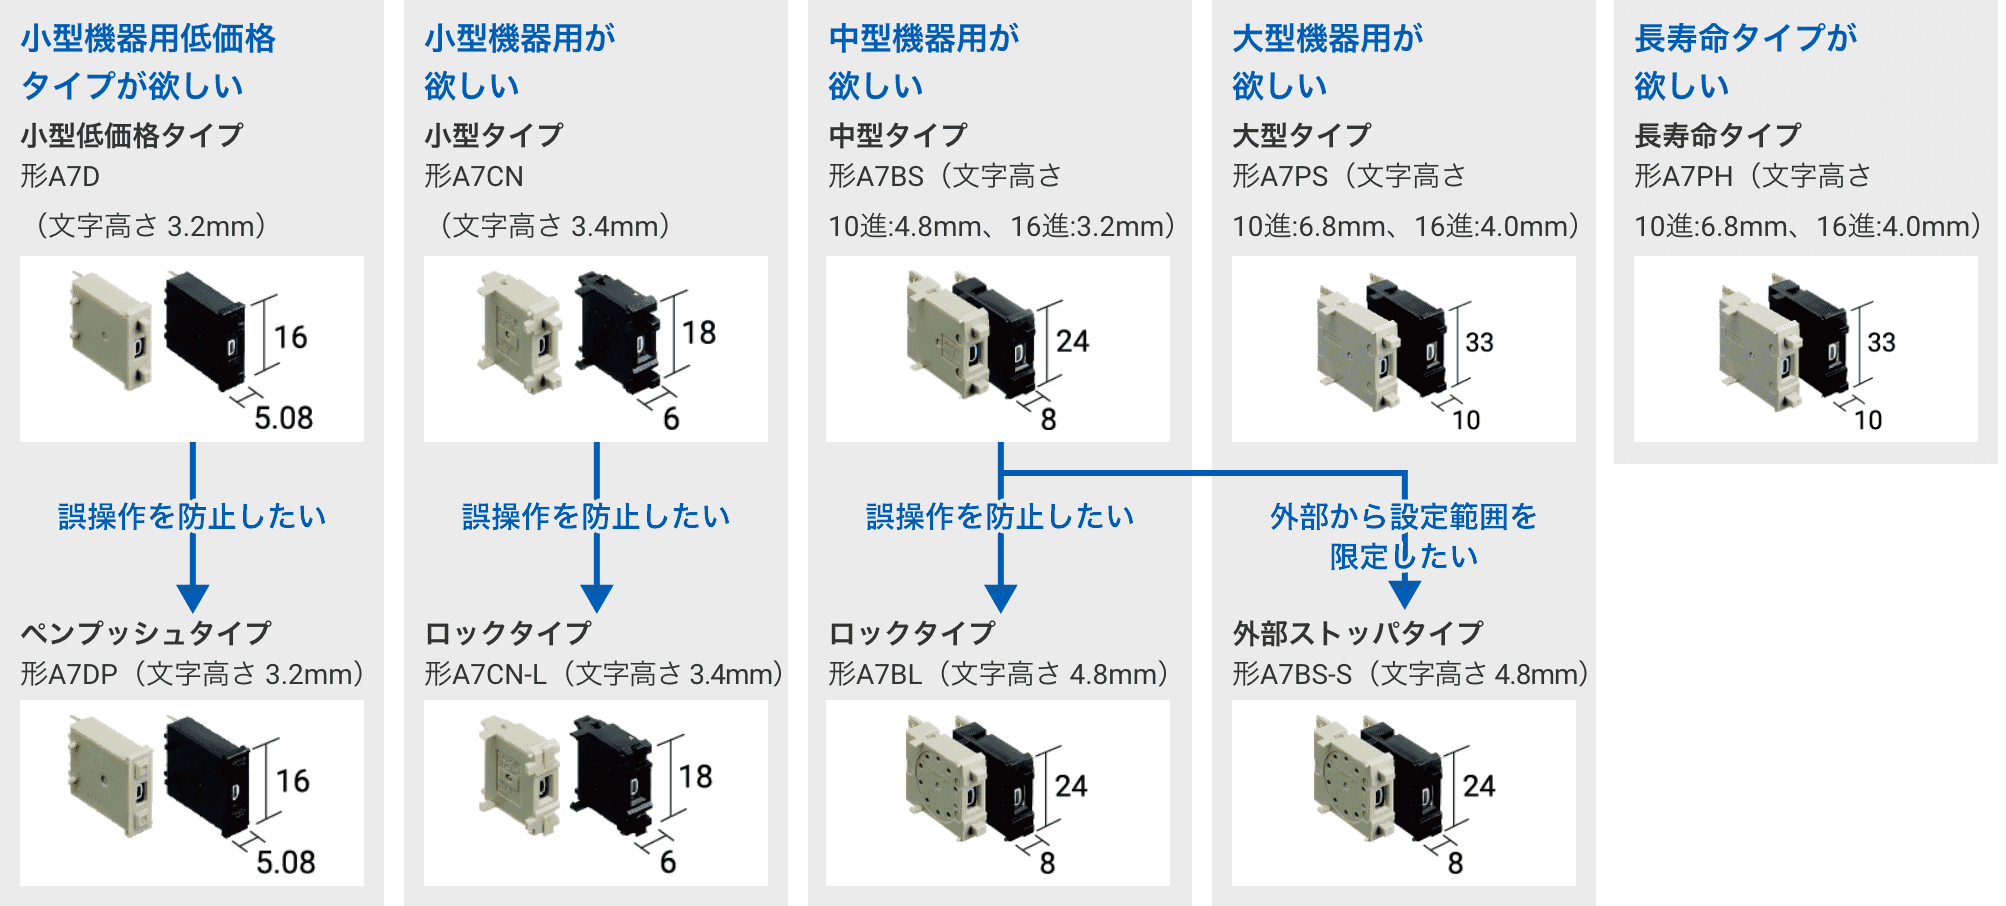 小型機器用低価格タイプが欲しい 小型低価格タイプ形A7D（文字高さ 3.2mm） 誤操作を防止したい ペンプッシュタイプ形A7DP（文字高さ 3.2mm）,小型機器用が欲しい 小型タイプ形A7CN（文字高さ 3.4mm） 誤操作を防止したい ロックタイプ形A7CN-L（文字高さ 3.4mm）,中型機器用が欲しい 中型タイプ形A7BS 文字高さ 10進:4.8mm 16進:3.2mm 誤操作を防止したい ロックタイプ形A7BL（文字高さ 4.8mm）,大型機器用が欲しい 大型タイプ形A7PS 文字高さ10進:6.8mm16進:4.0mm 外部から設定範囲を限定したい 外部ストッパタイプ形A7BS‐S（文字高さ 4.8mm）,長寿命タイプが欲しい 長寿命タイプ形A7PH 文字高さ10進:6.8mm16進:4.0mm